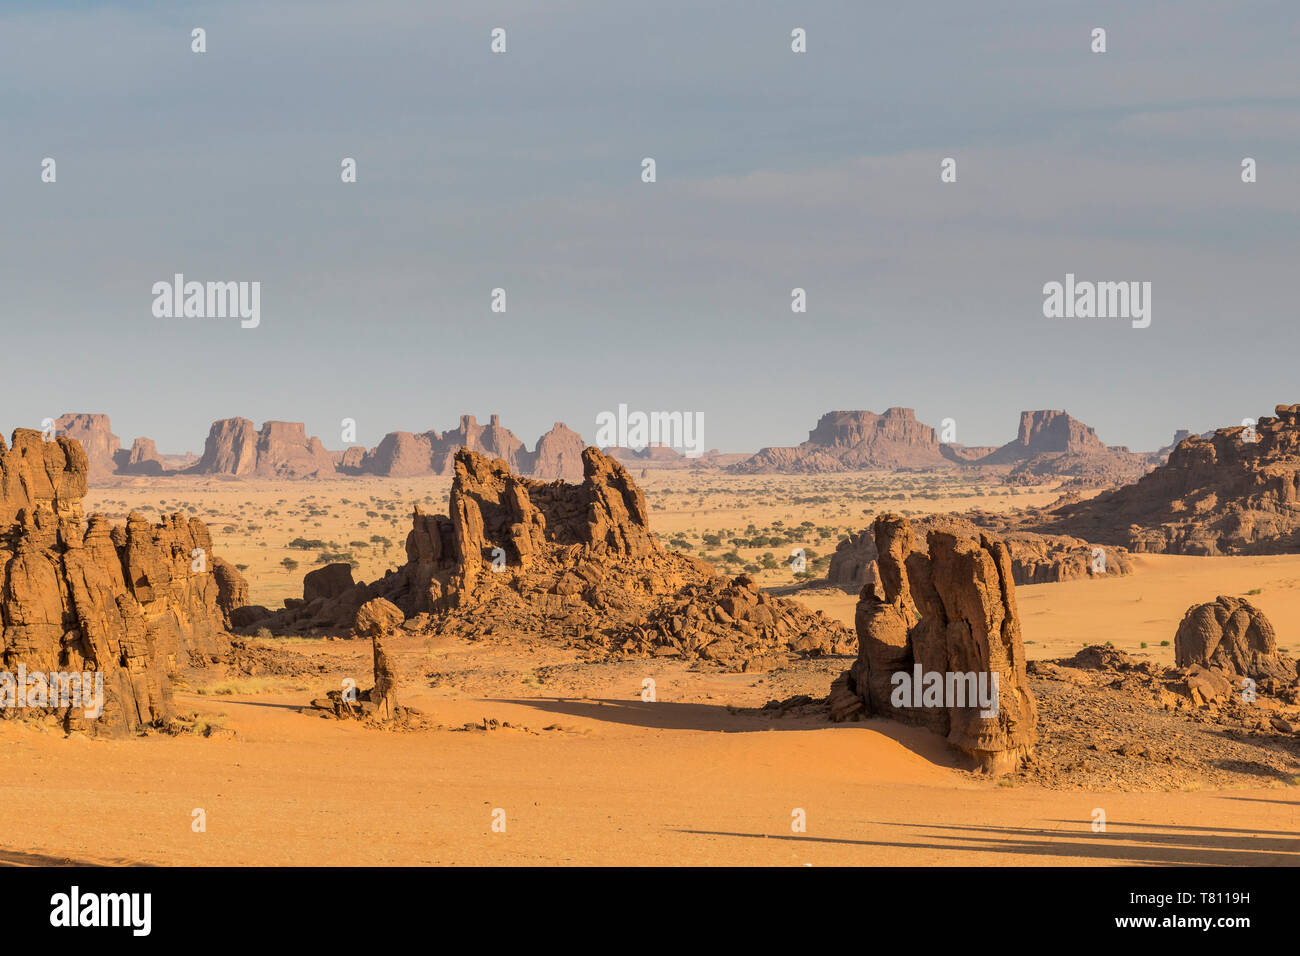 Le splendide formazioni rocciose, Ennedi altopiano, Sito Patrimonio Mondiale dell'UNESCO, la regione di Ennedi, Ciad, Africa Foto Stock